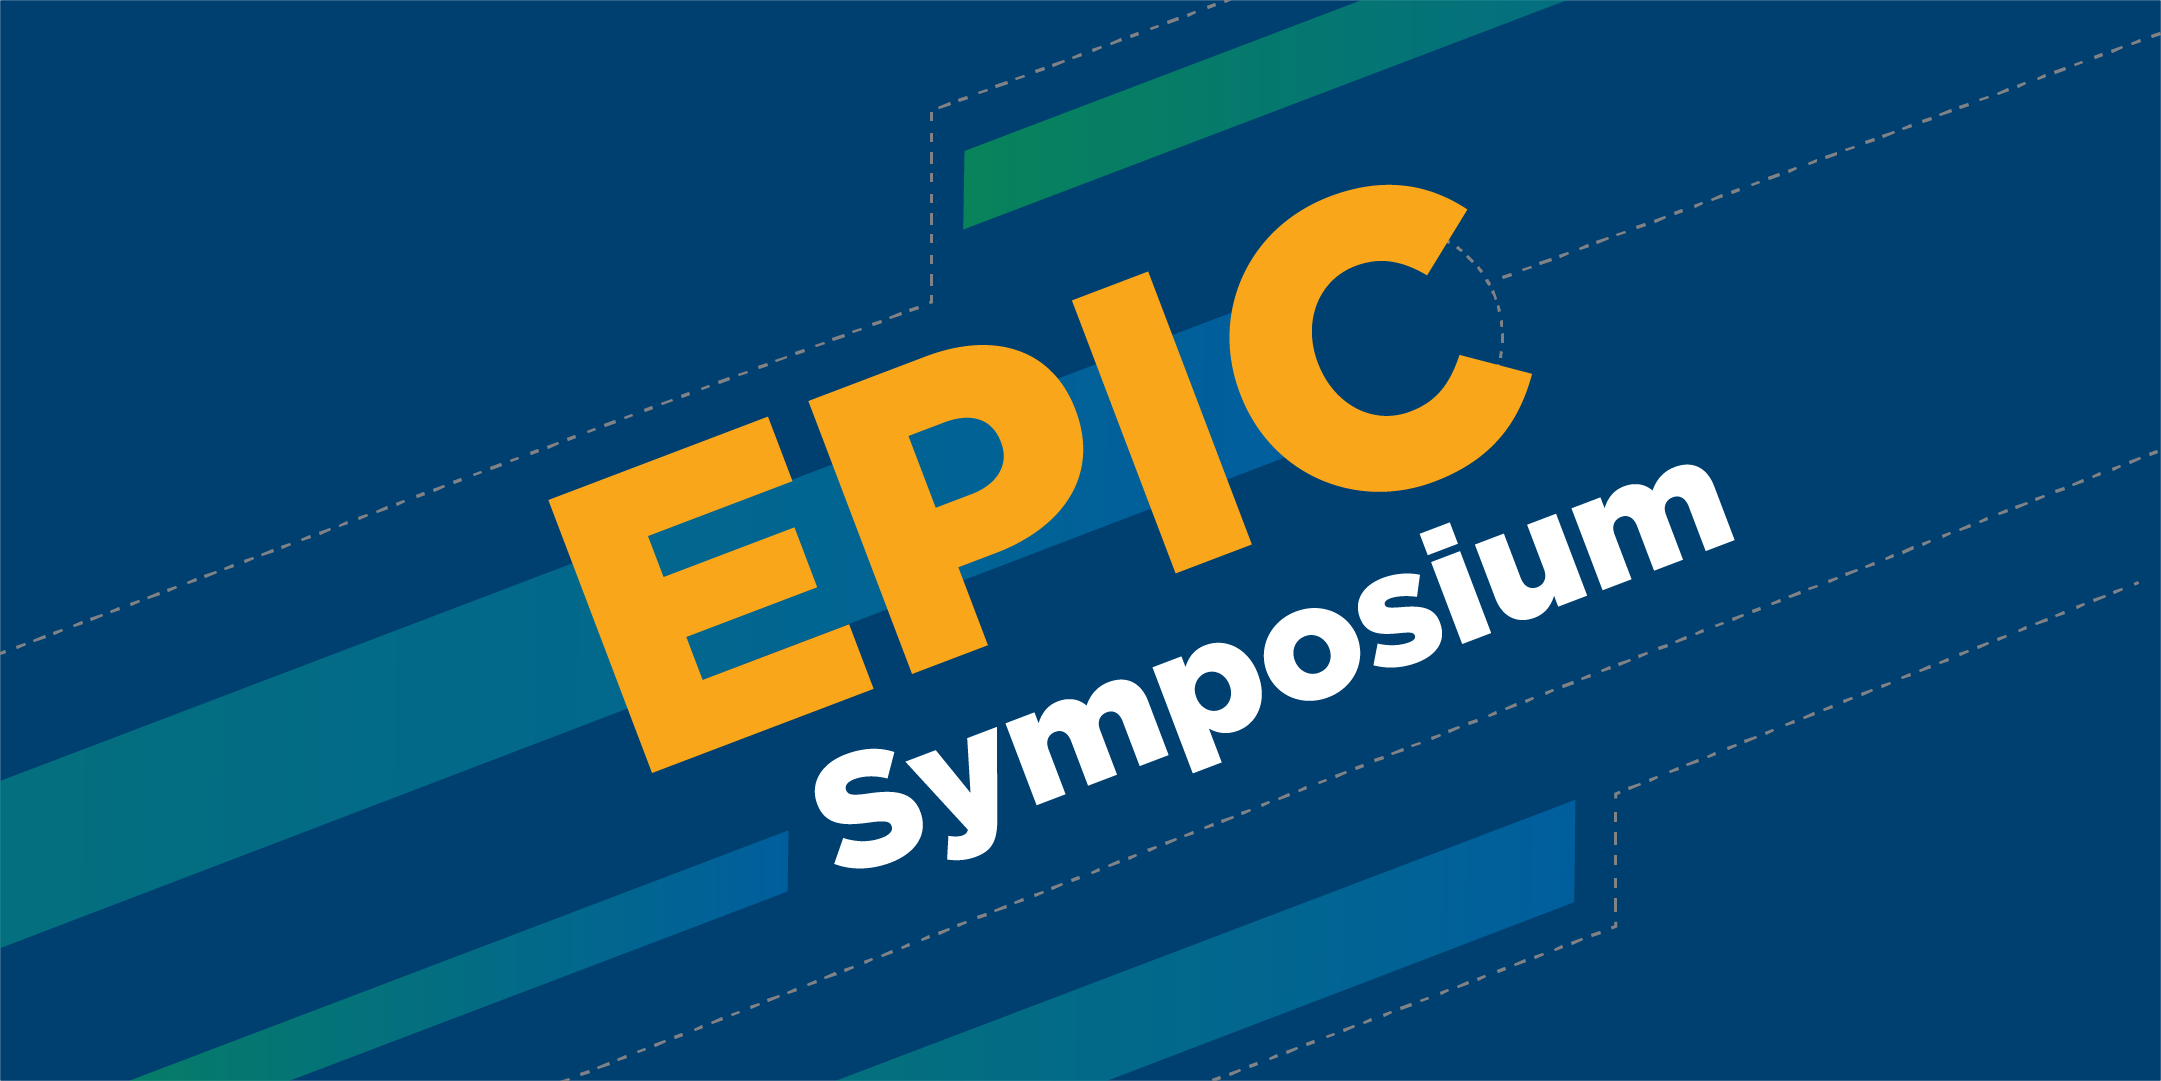 Annual EPIC Symposium graphic